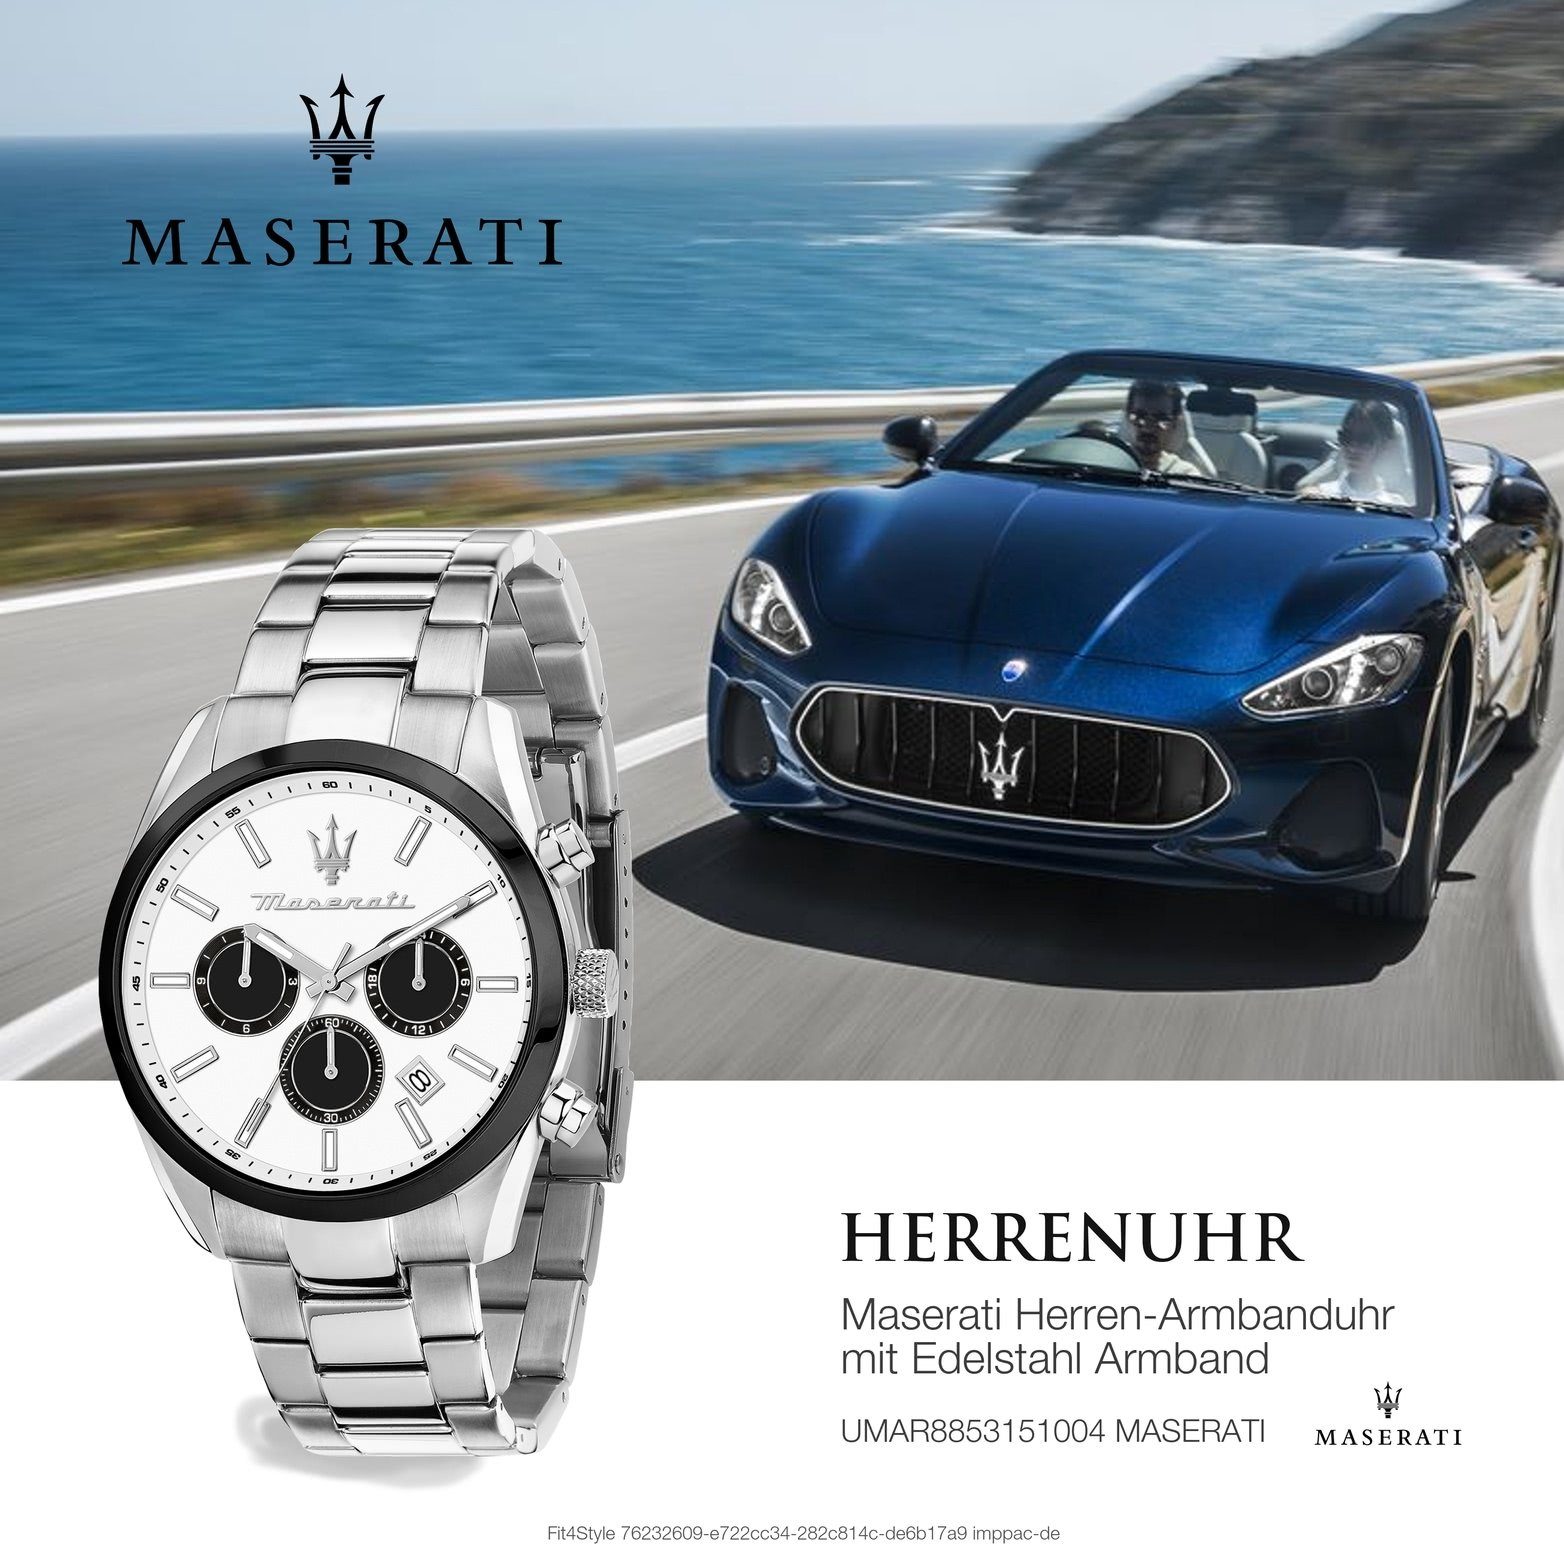 MASERATI Multifunktionsuhr Maserati Herrenuhr Attrazione, Herrenuhr  Edelstahlarmband, rundes Gehäuse, groß (ca. 43mm) weiß